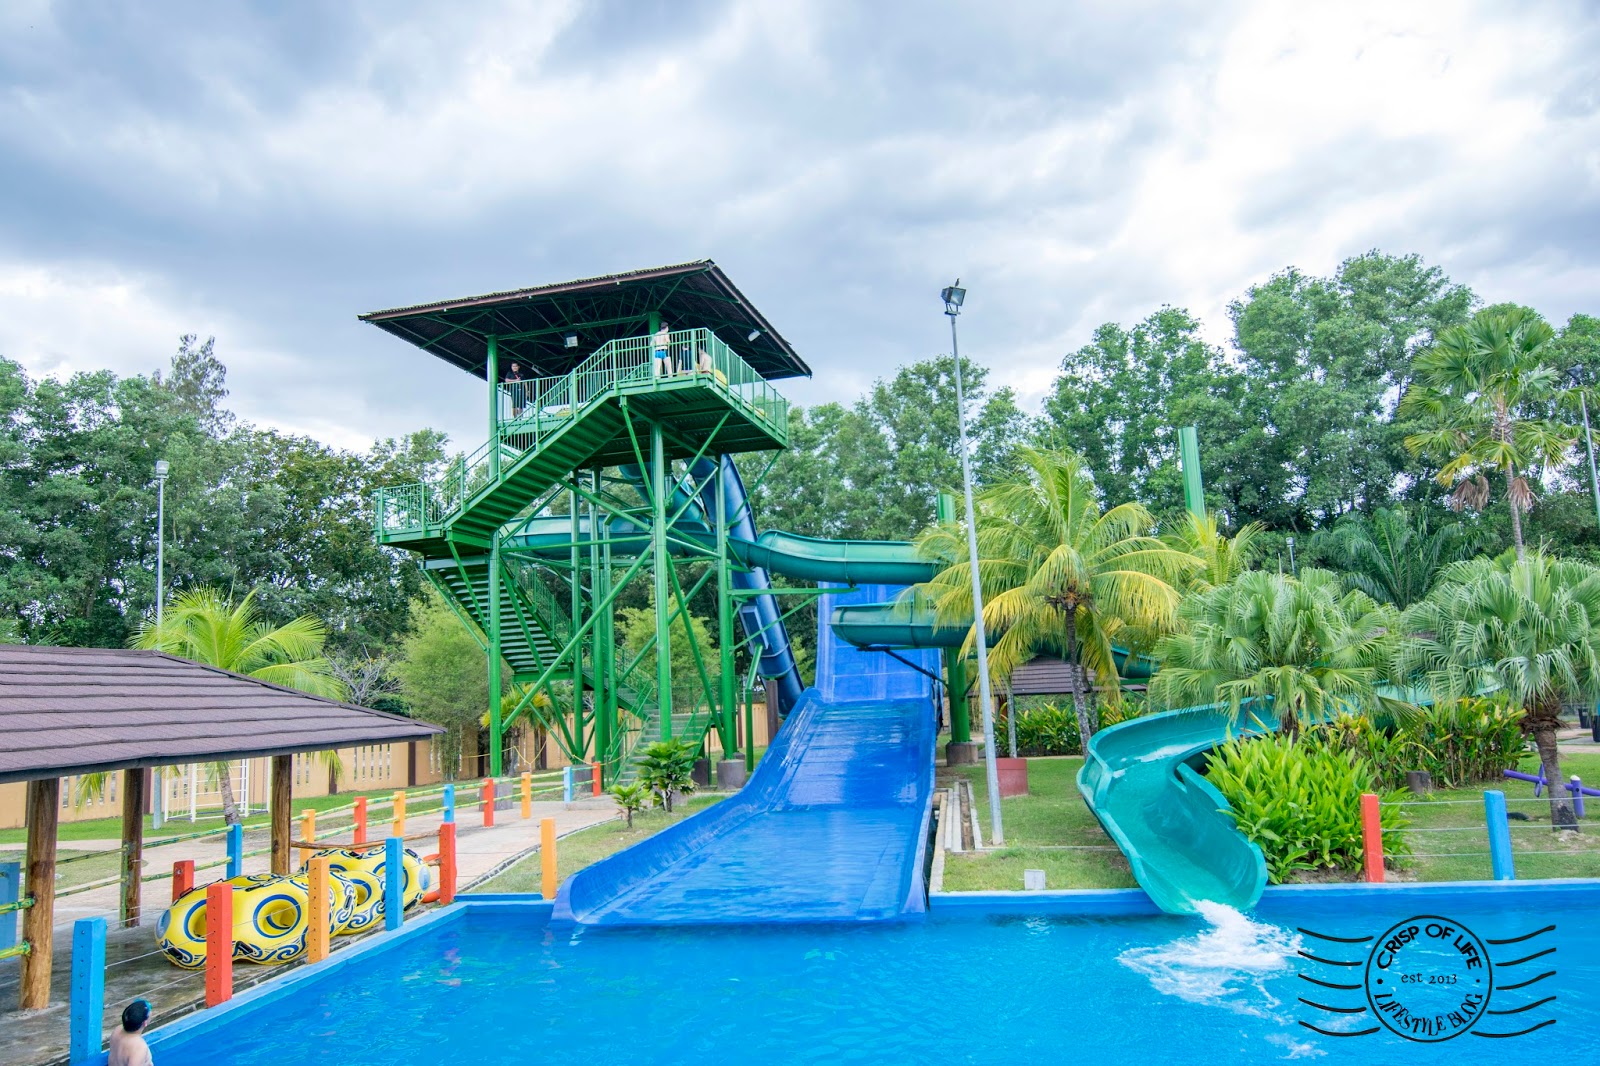 The Carnivall Waterpark @ Sungai Petani, Kedah